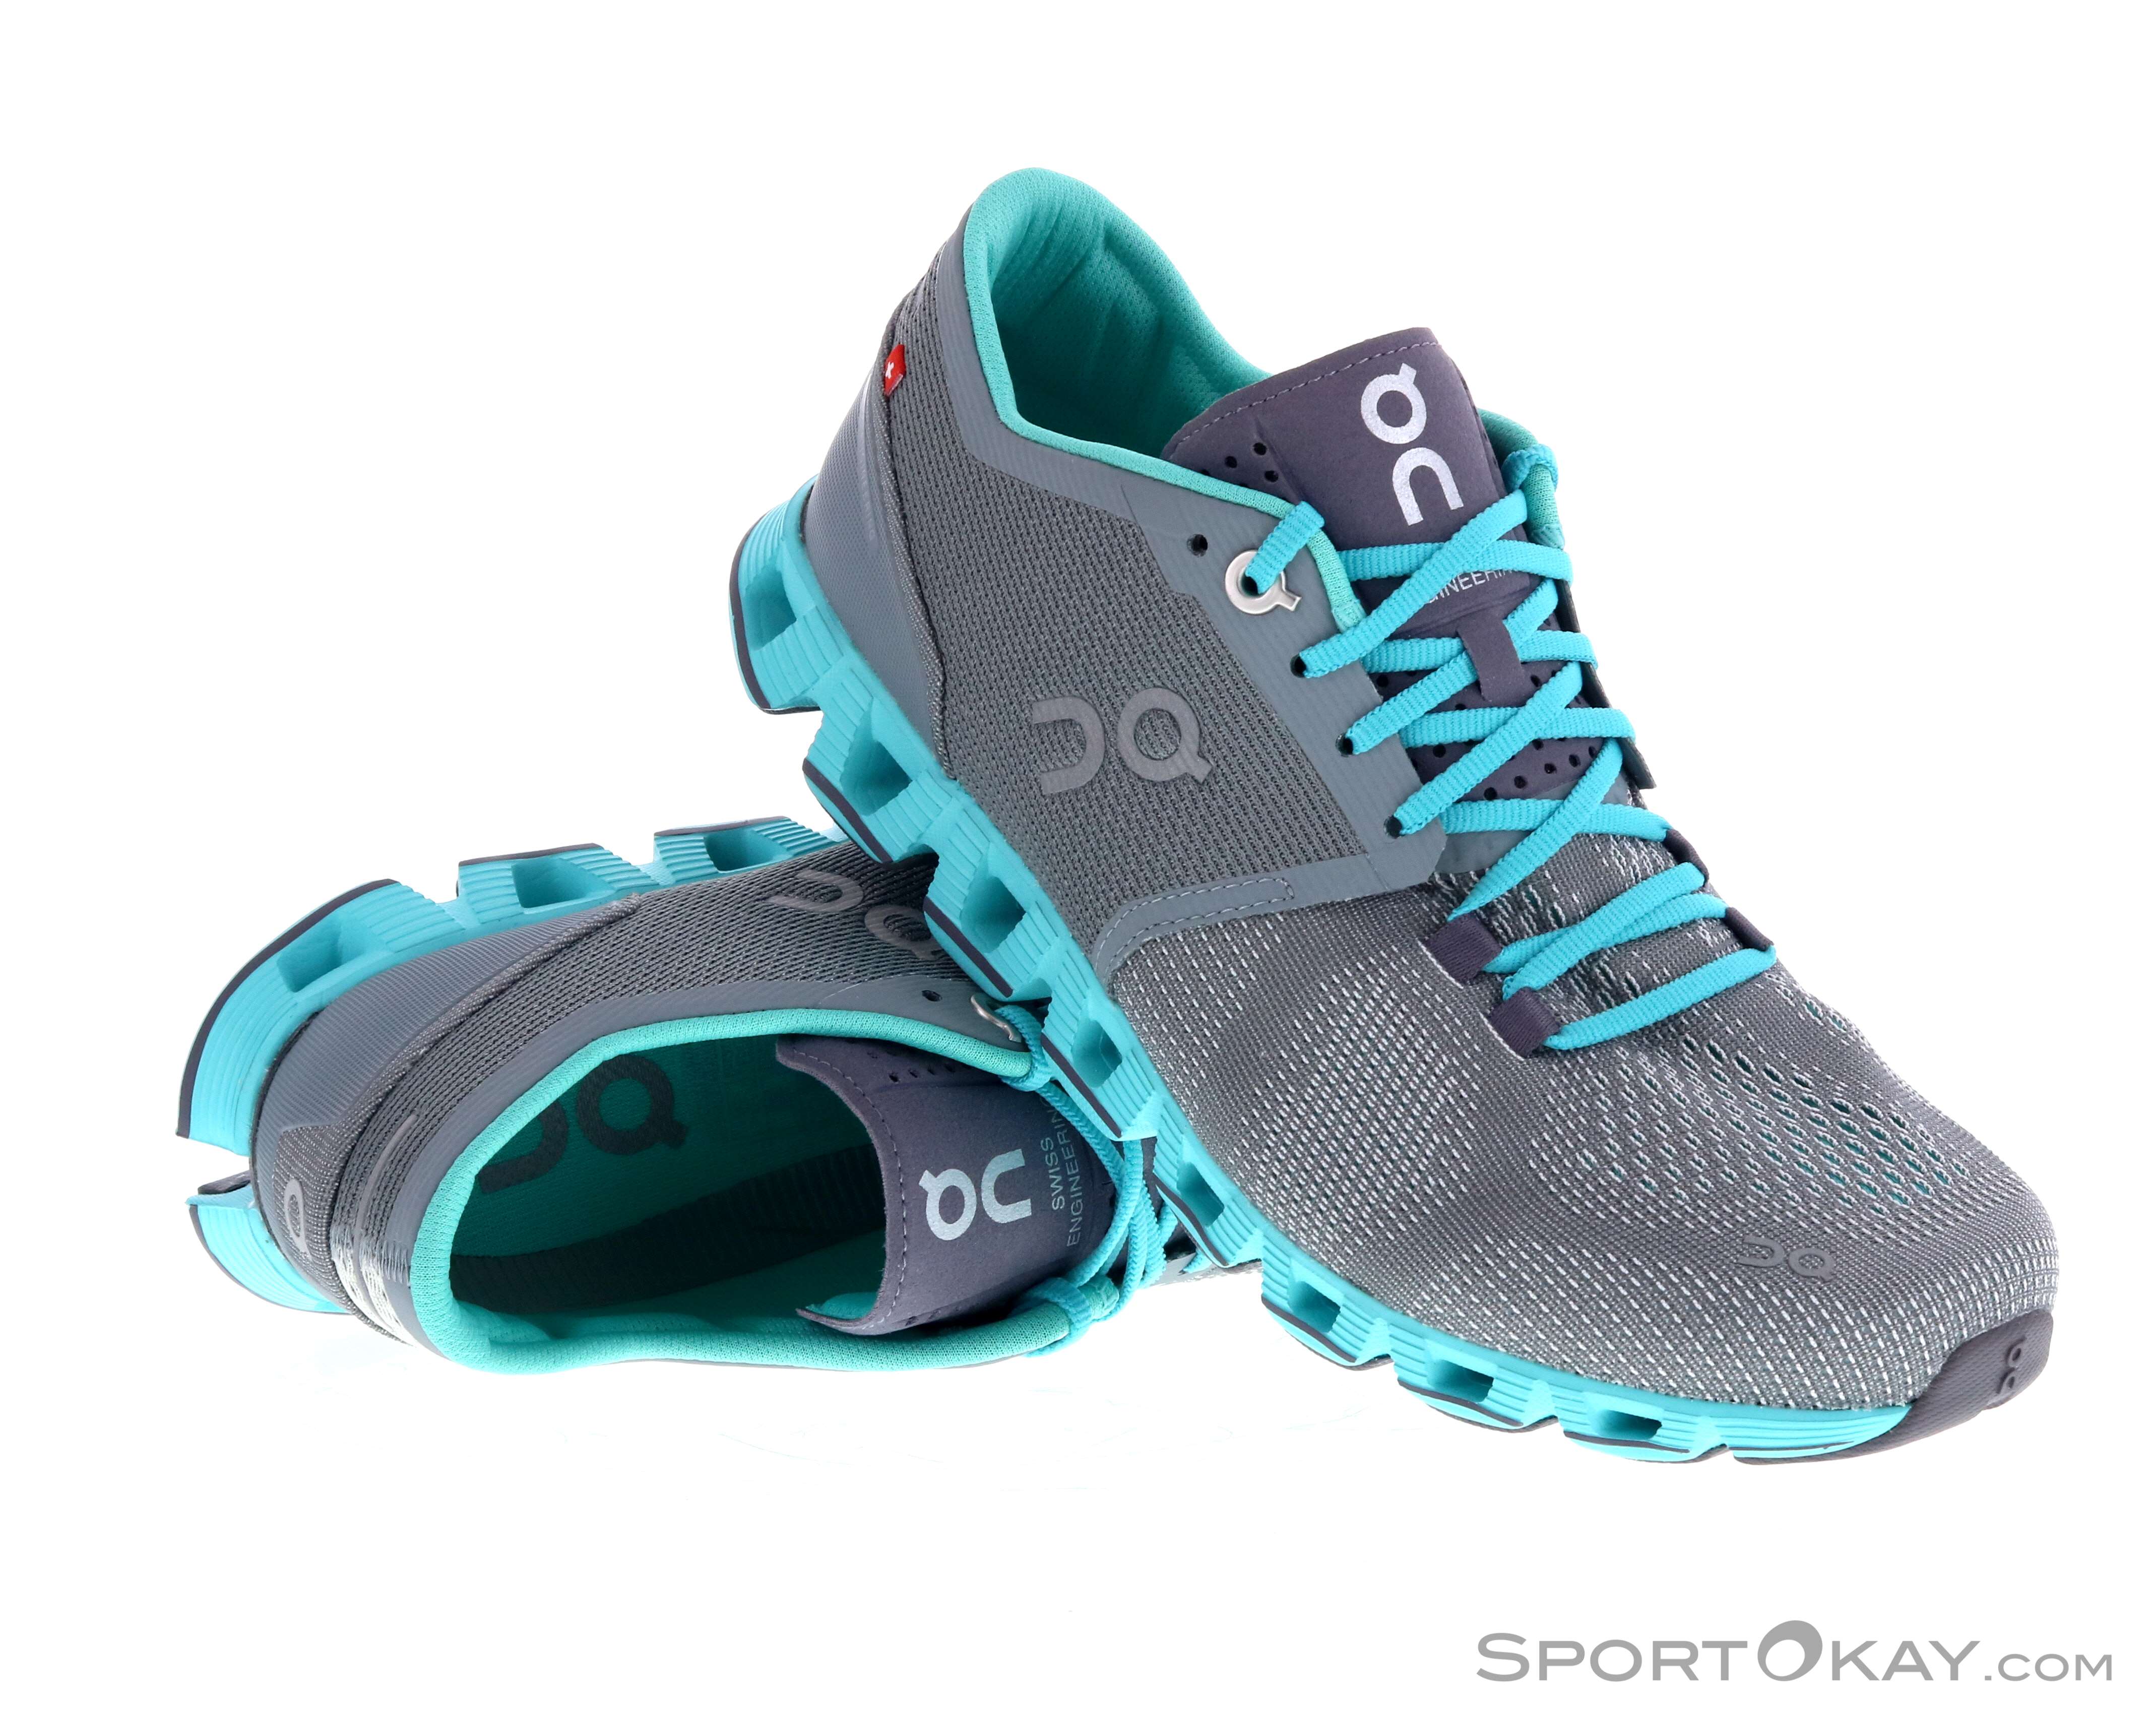 oc women's running shoes